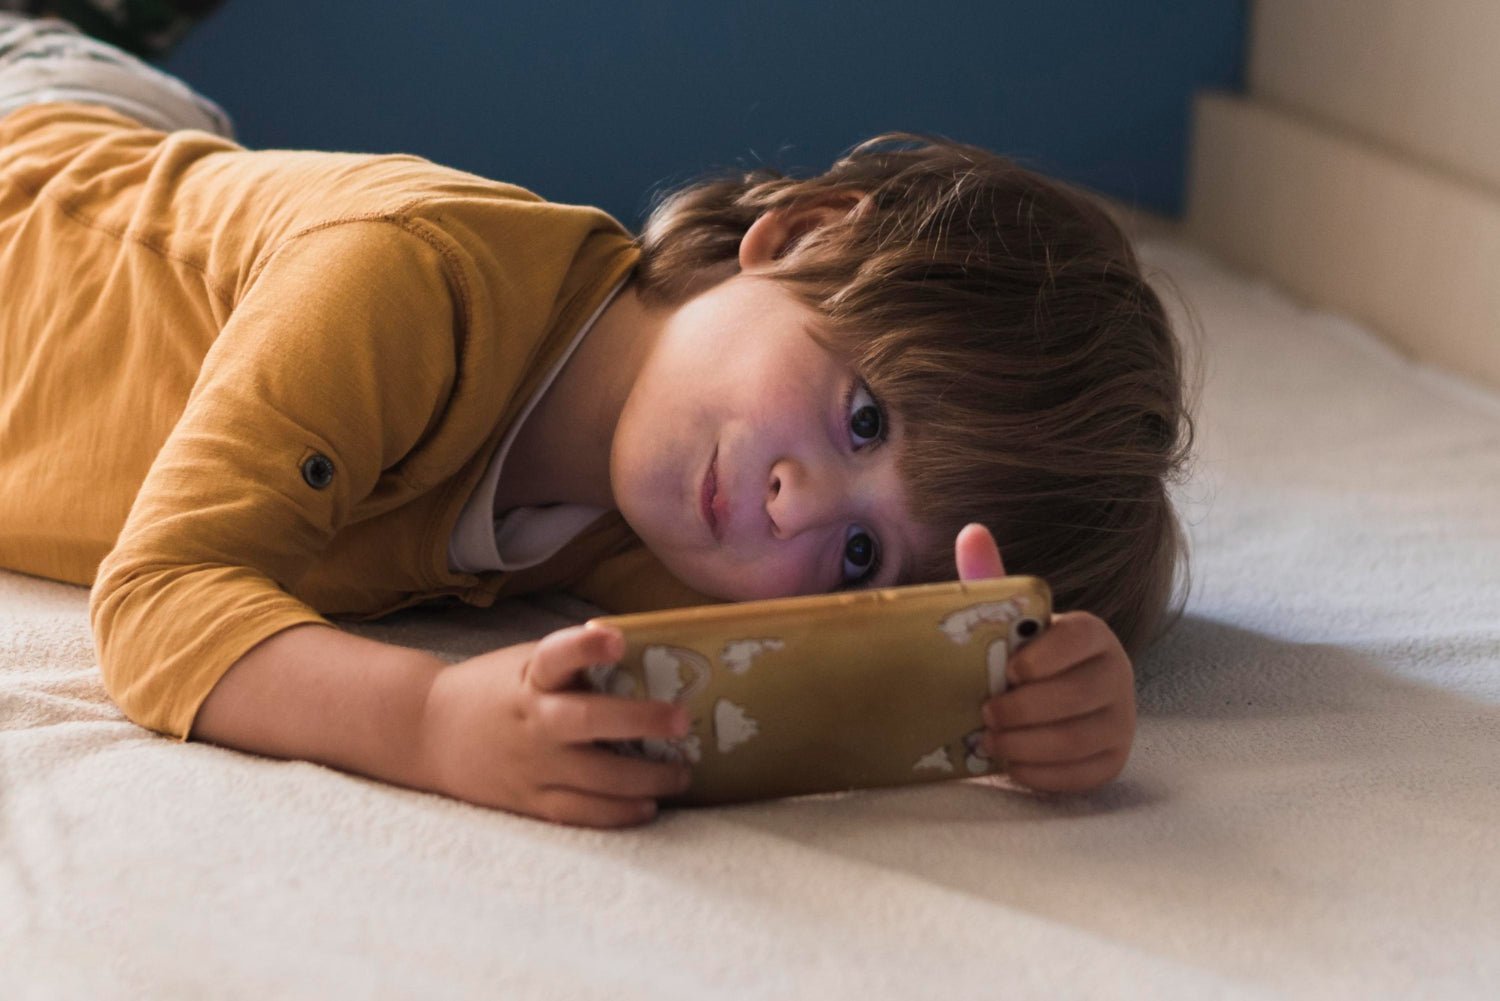 Pode jogar, filho: os games infantis aliviam a falta de interação social